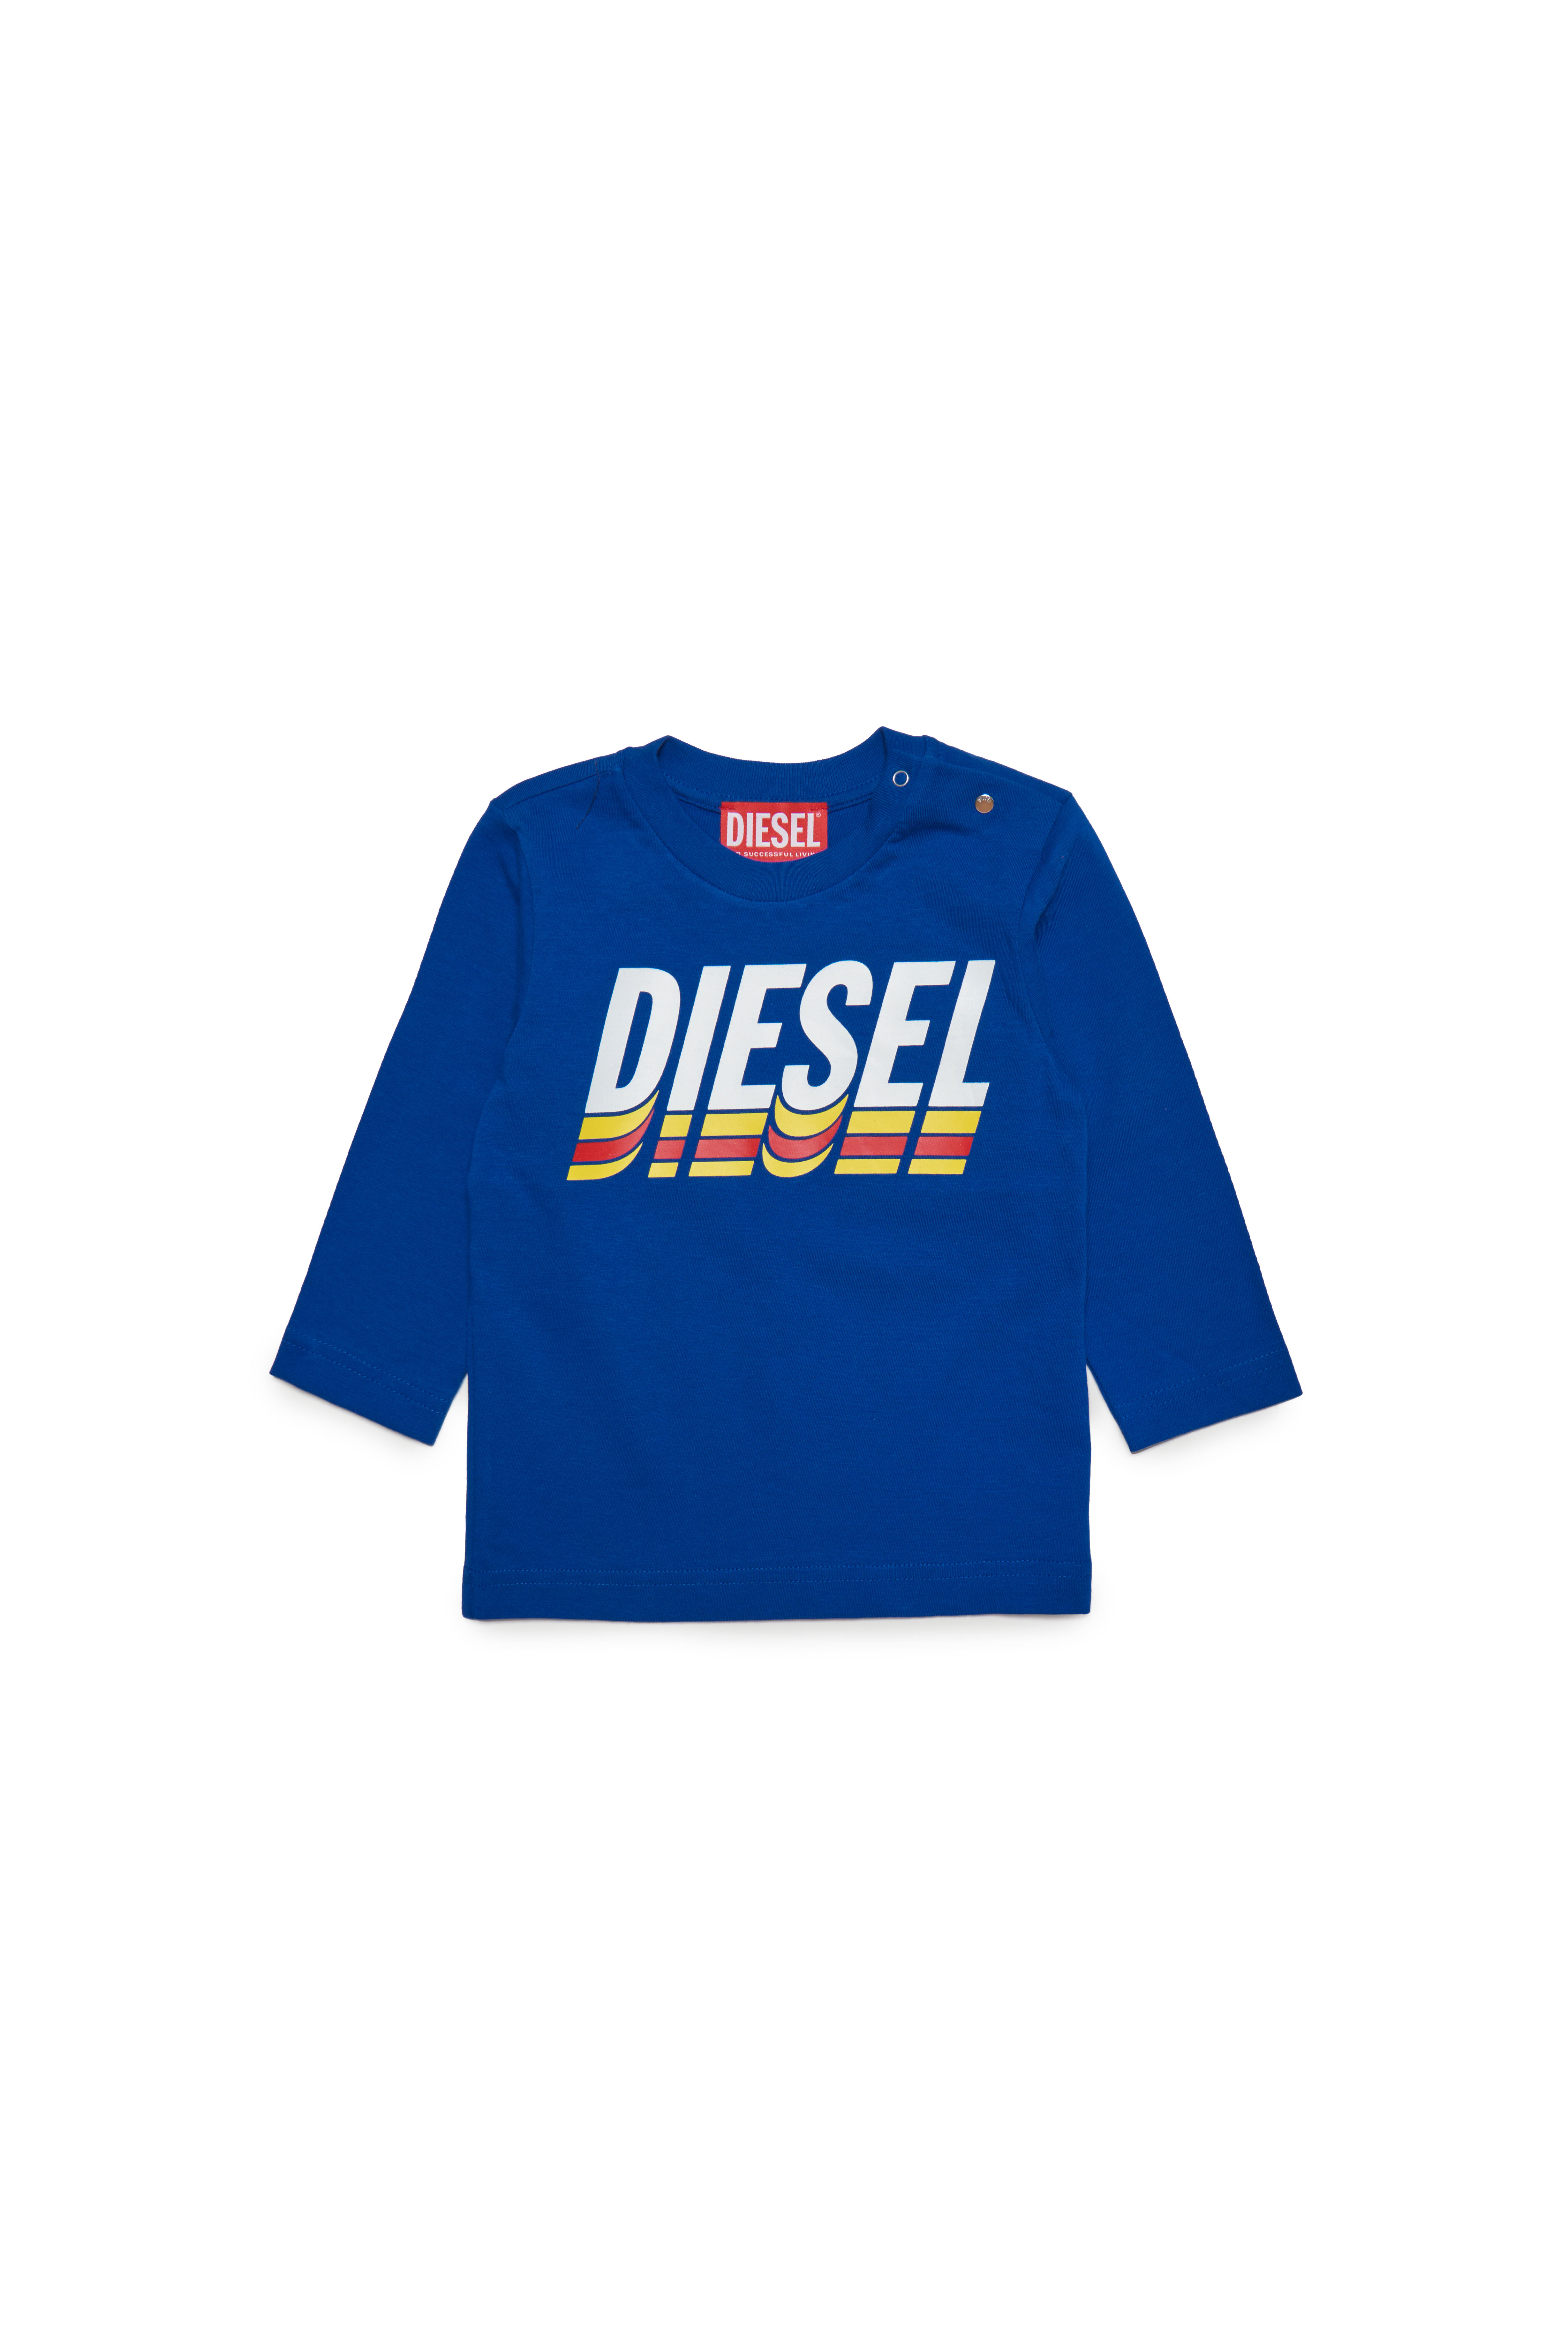 Diesel - TVASELSB, Bleu - Image 1